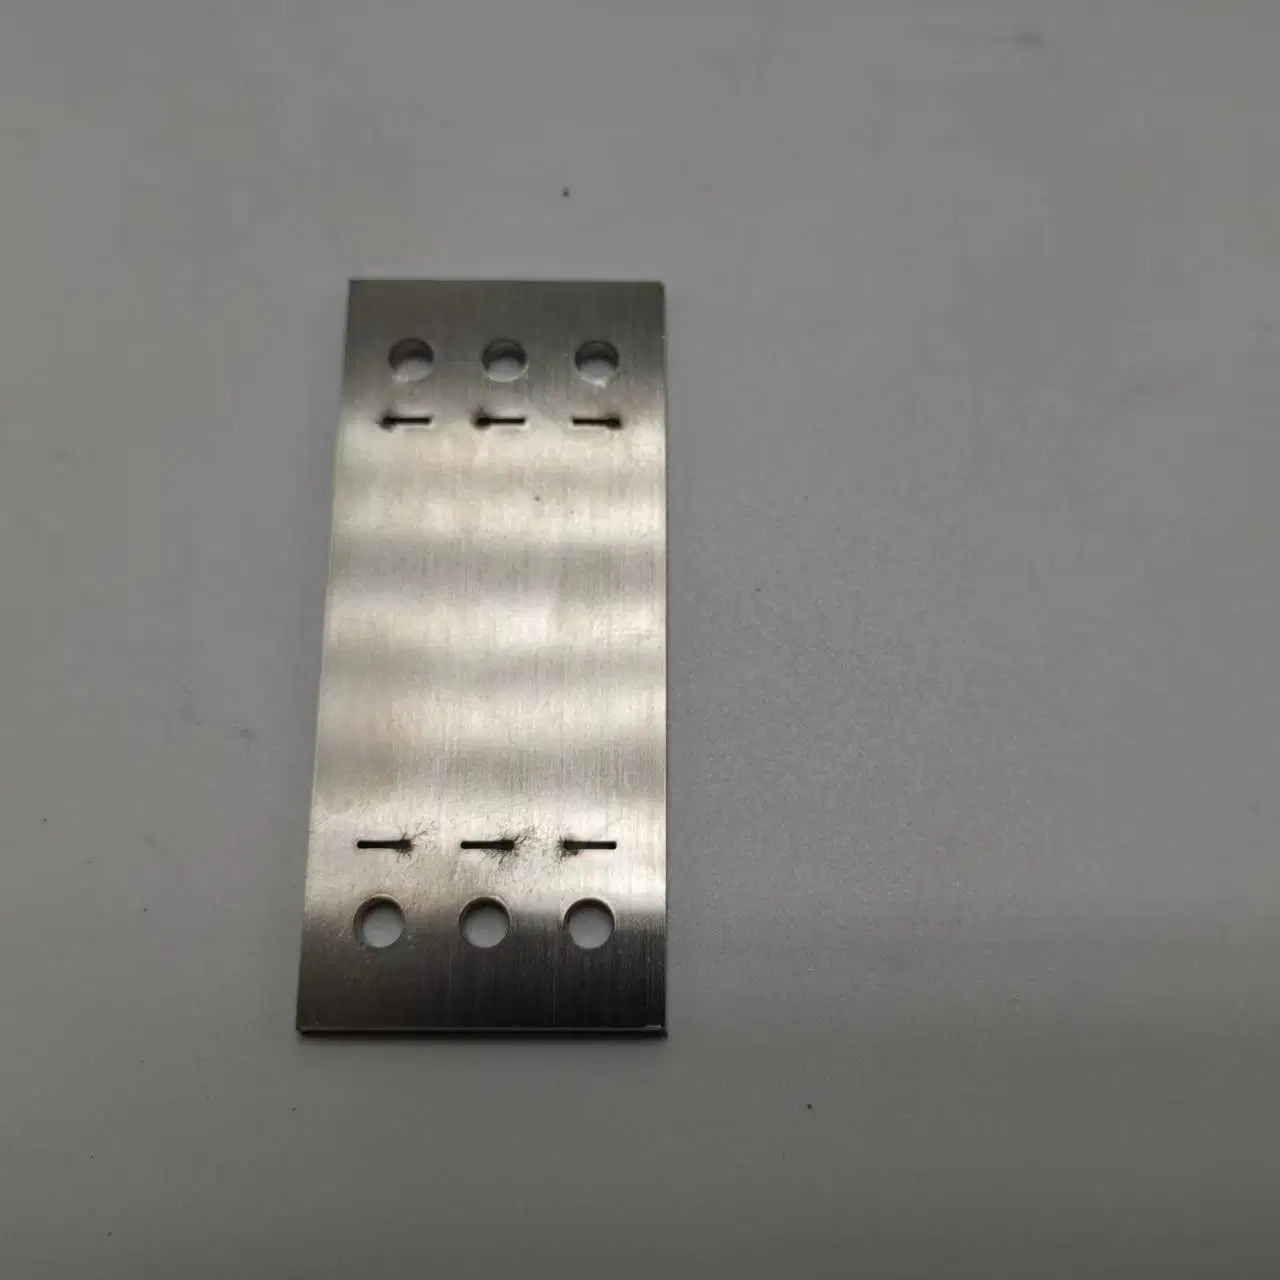 Placa de acero inoxidable placa de recogida enrollada en caliente Corte láser de metal